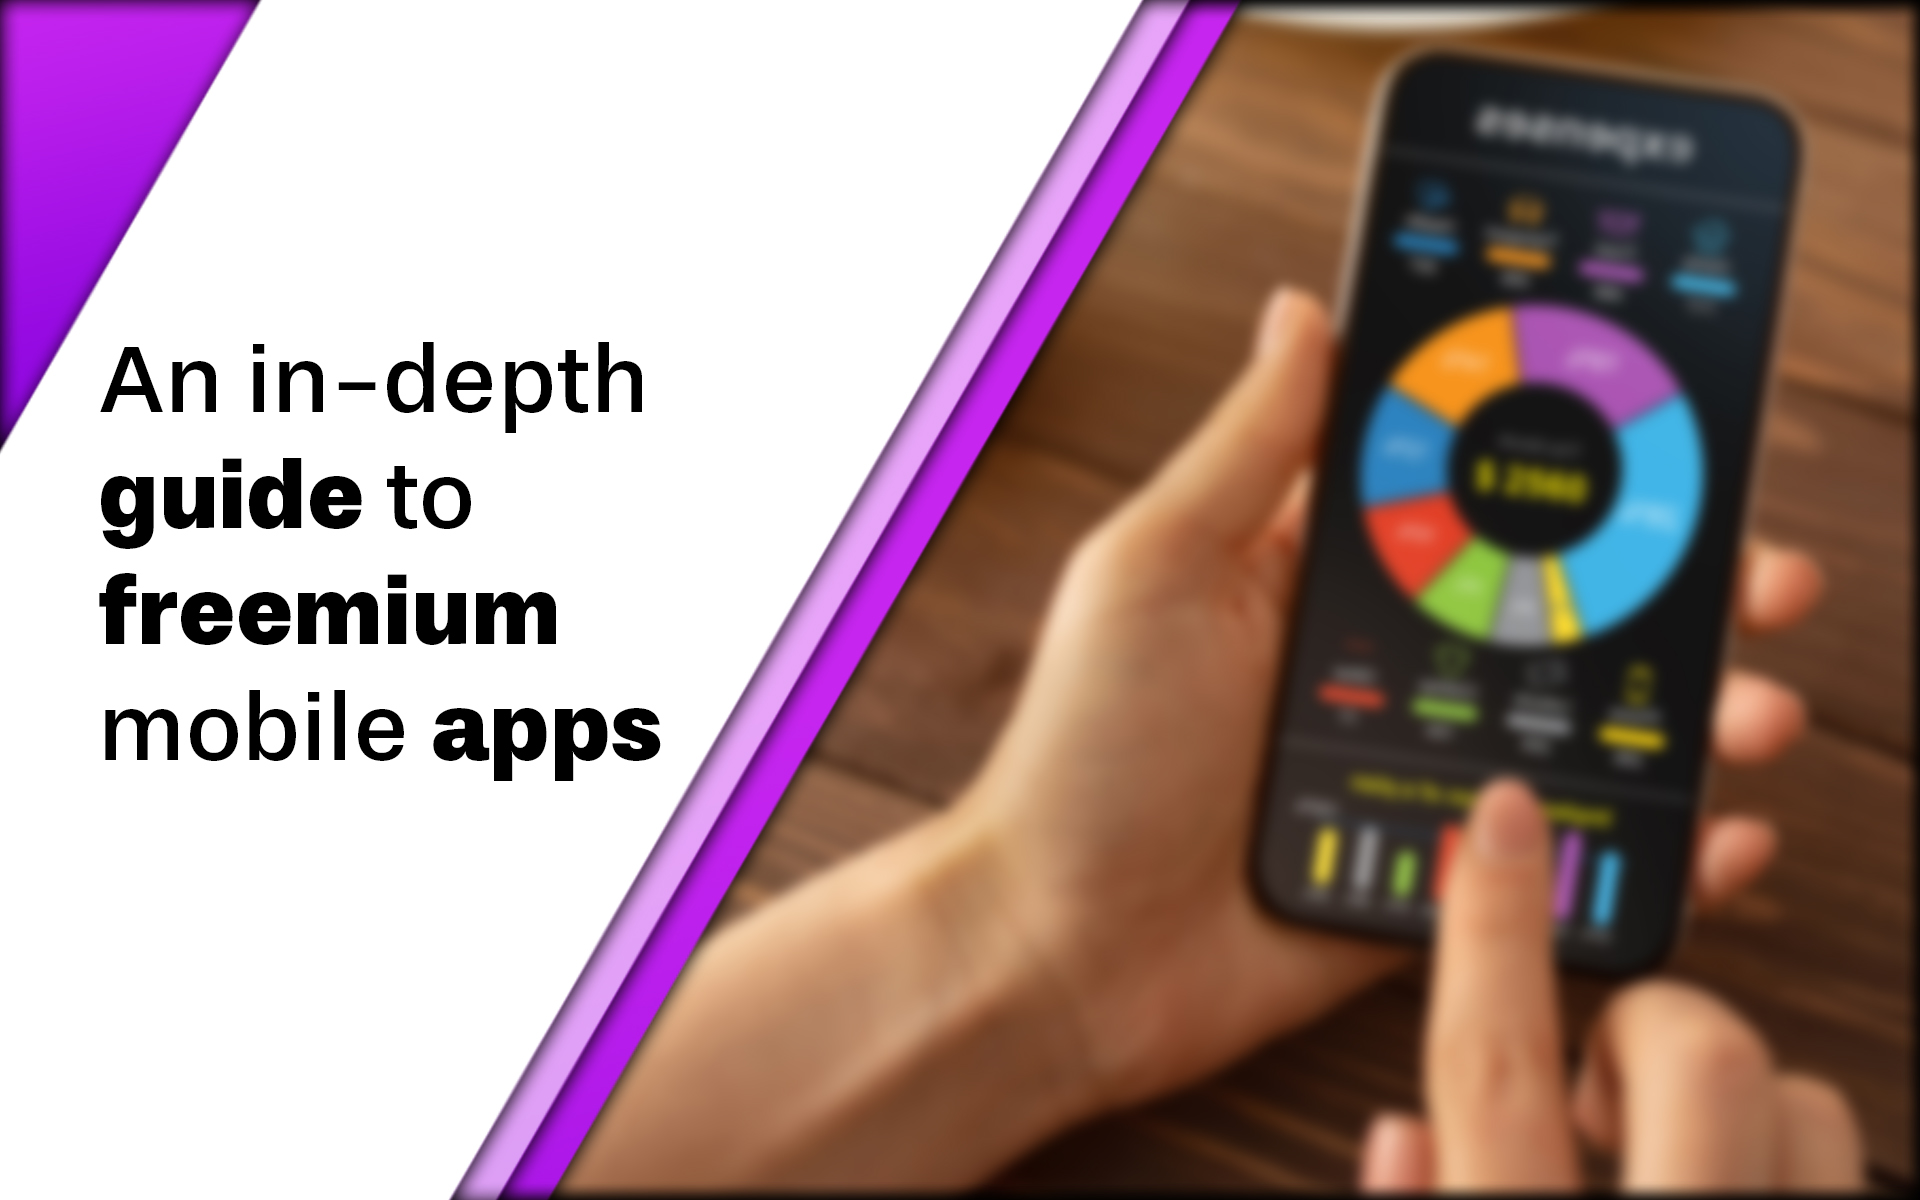 Freemium mobile apps